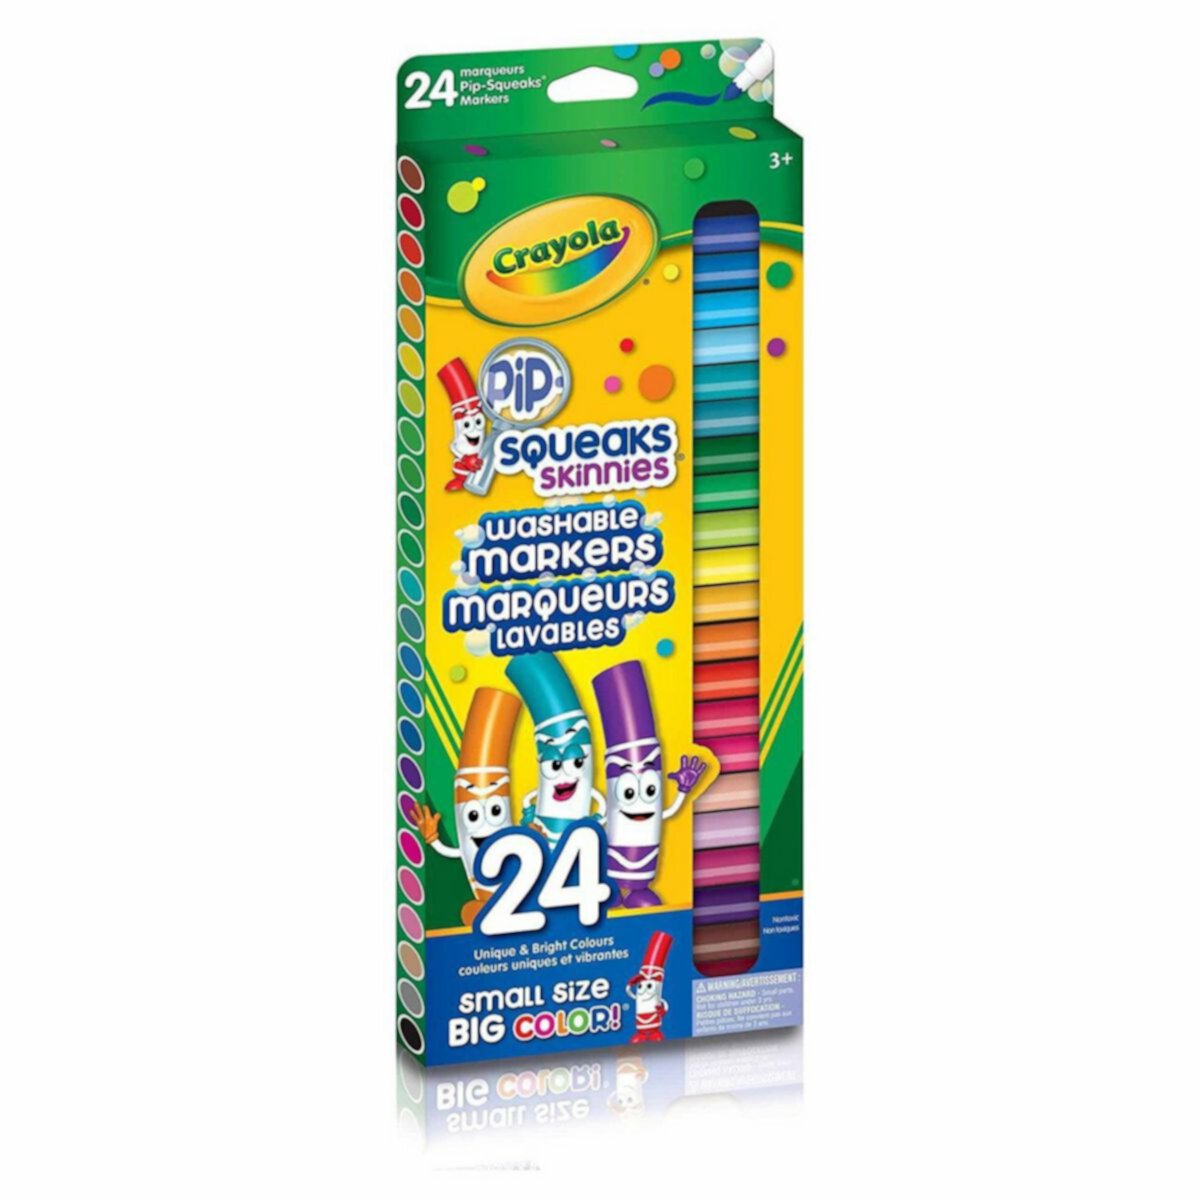 Crayola 24 смываемых маркера Pip-Squeaks Skinnies Fine Line Crayola